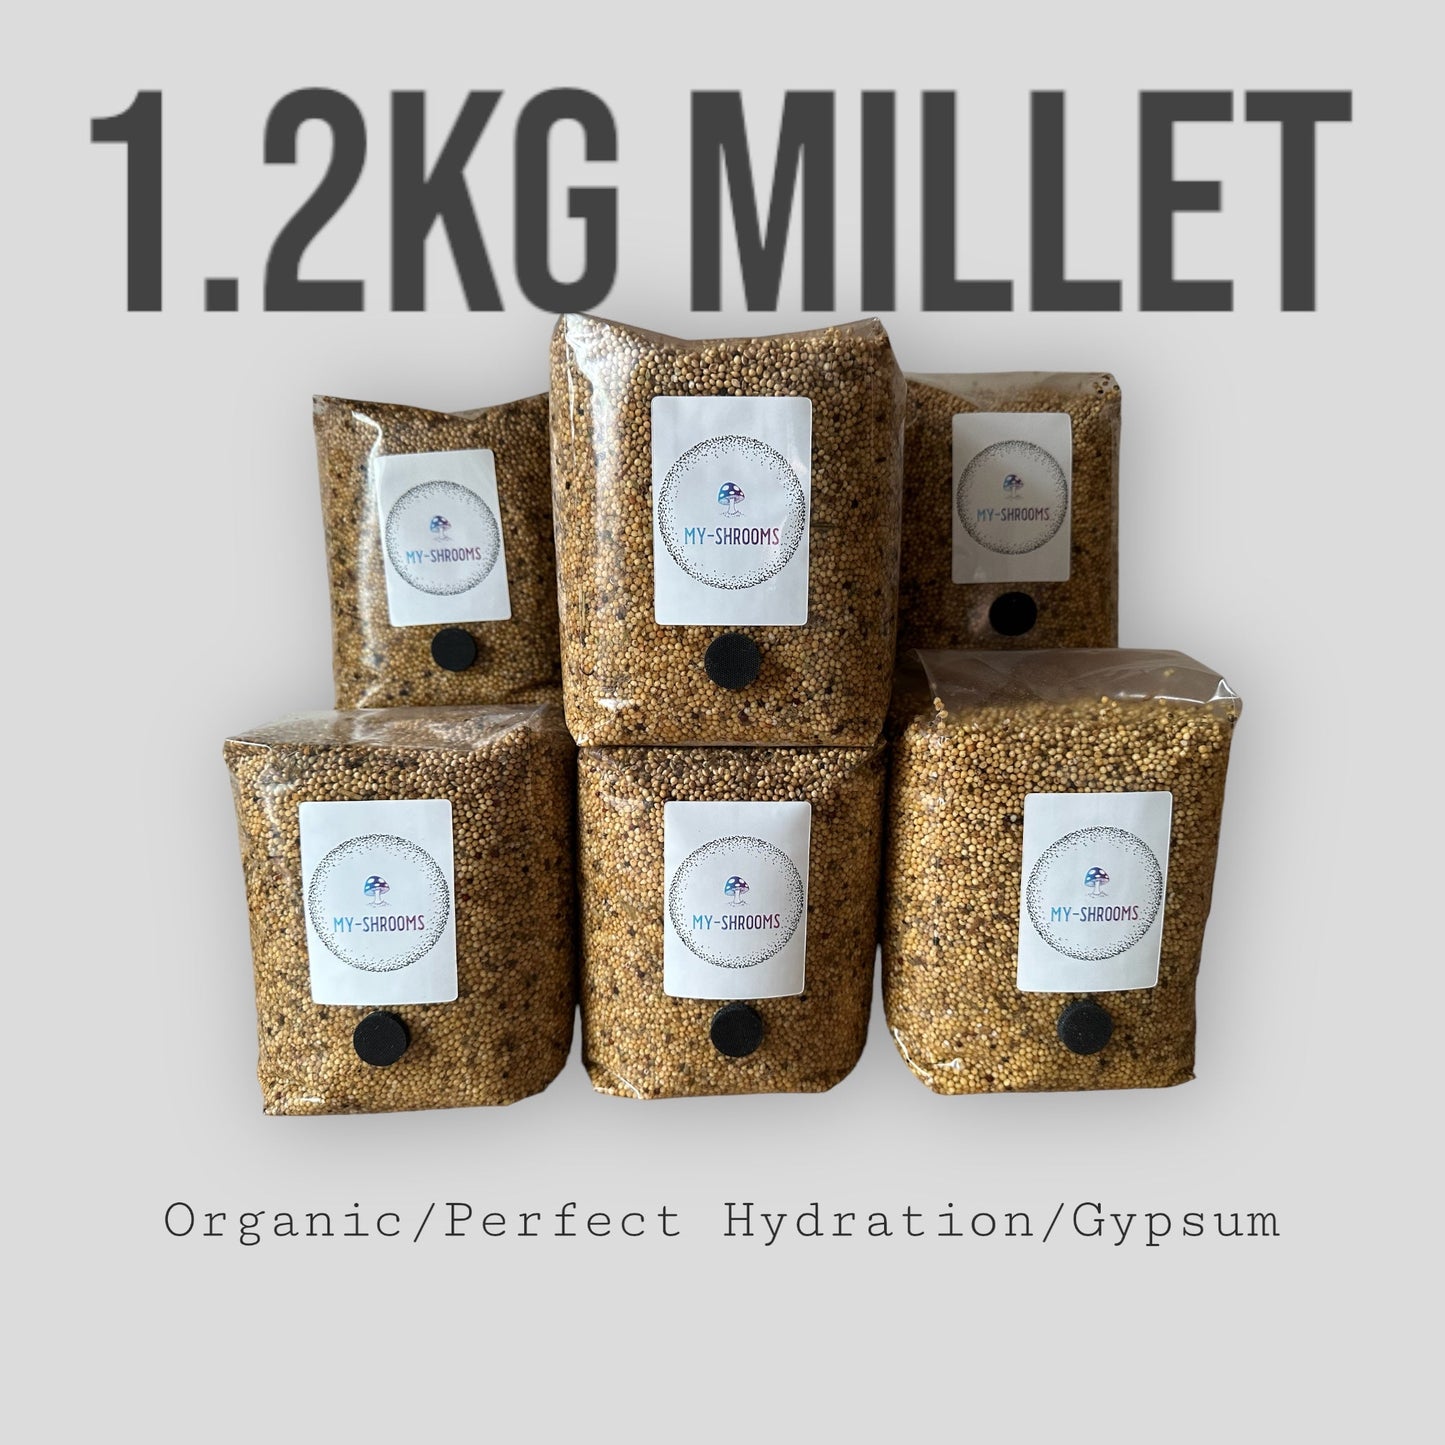 6 x Millet Spawn Bags 1.2kg